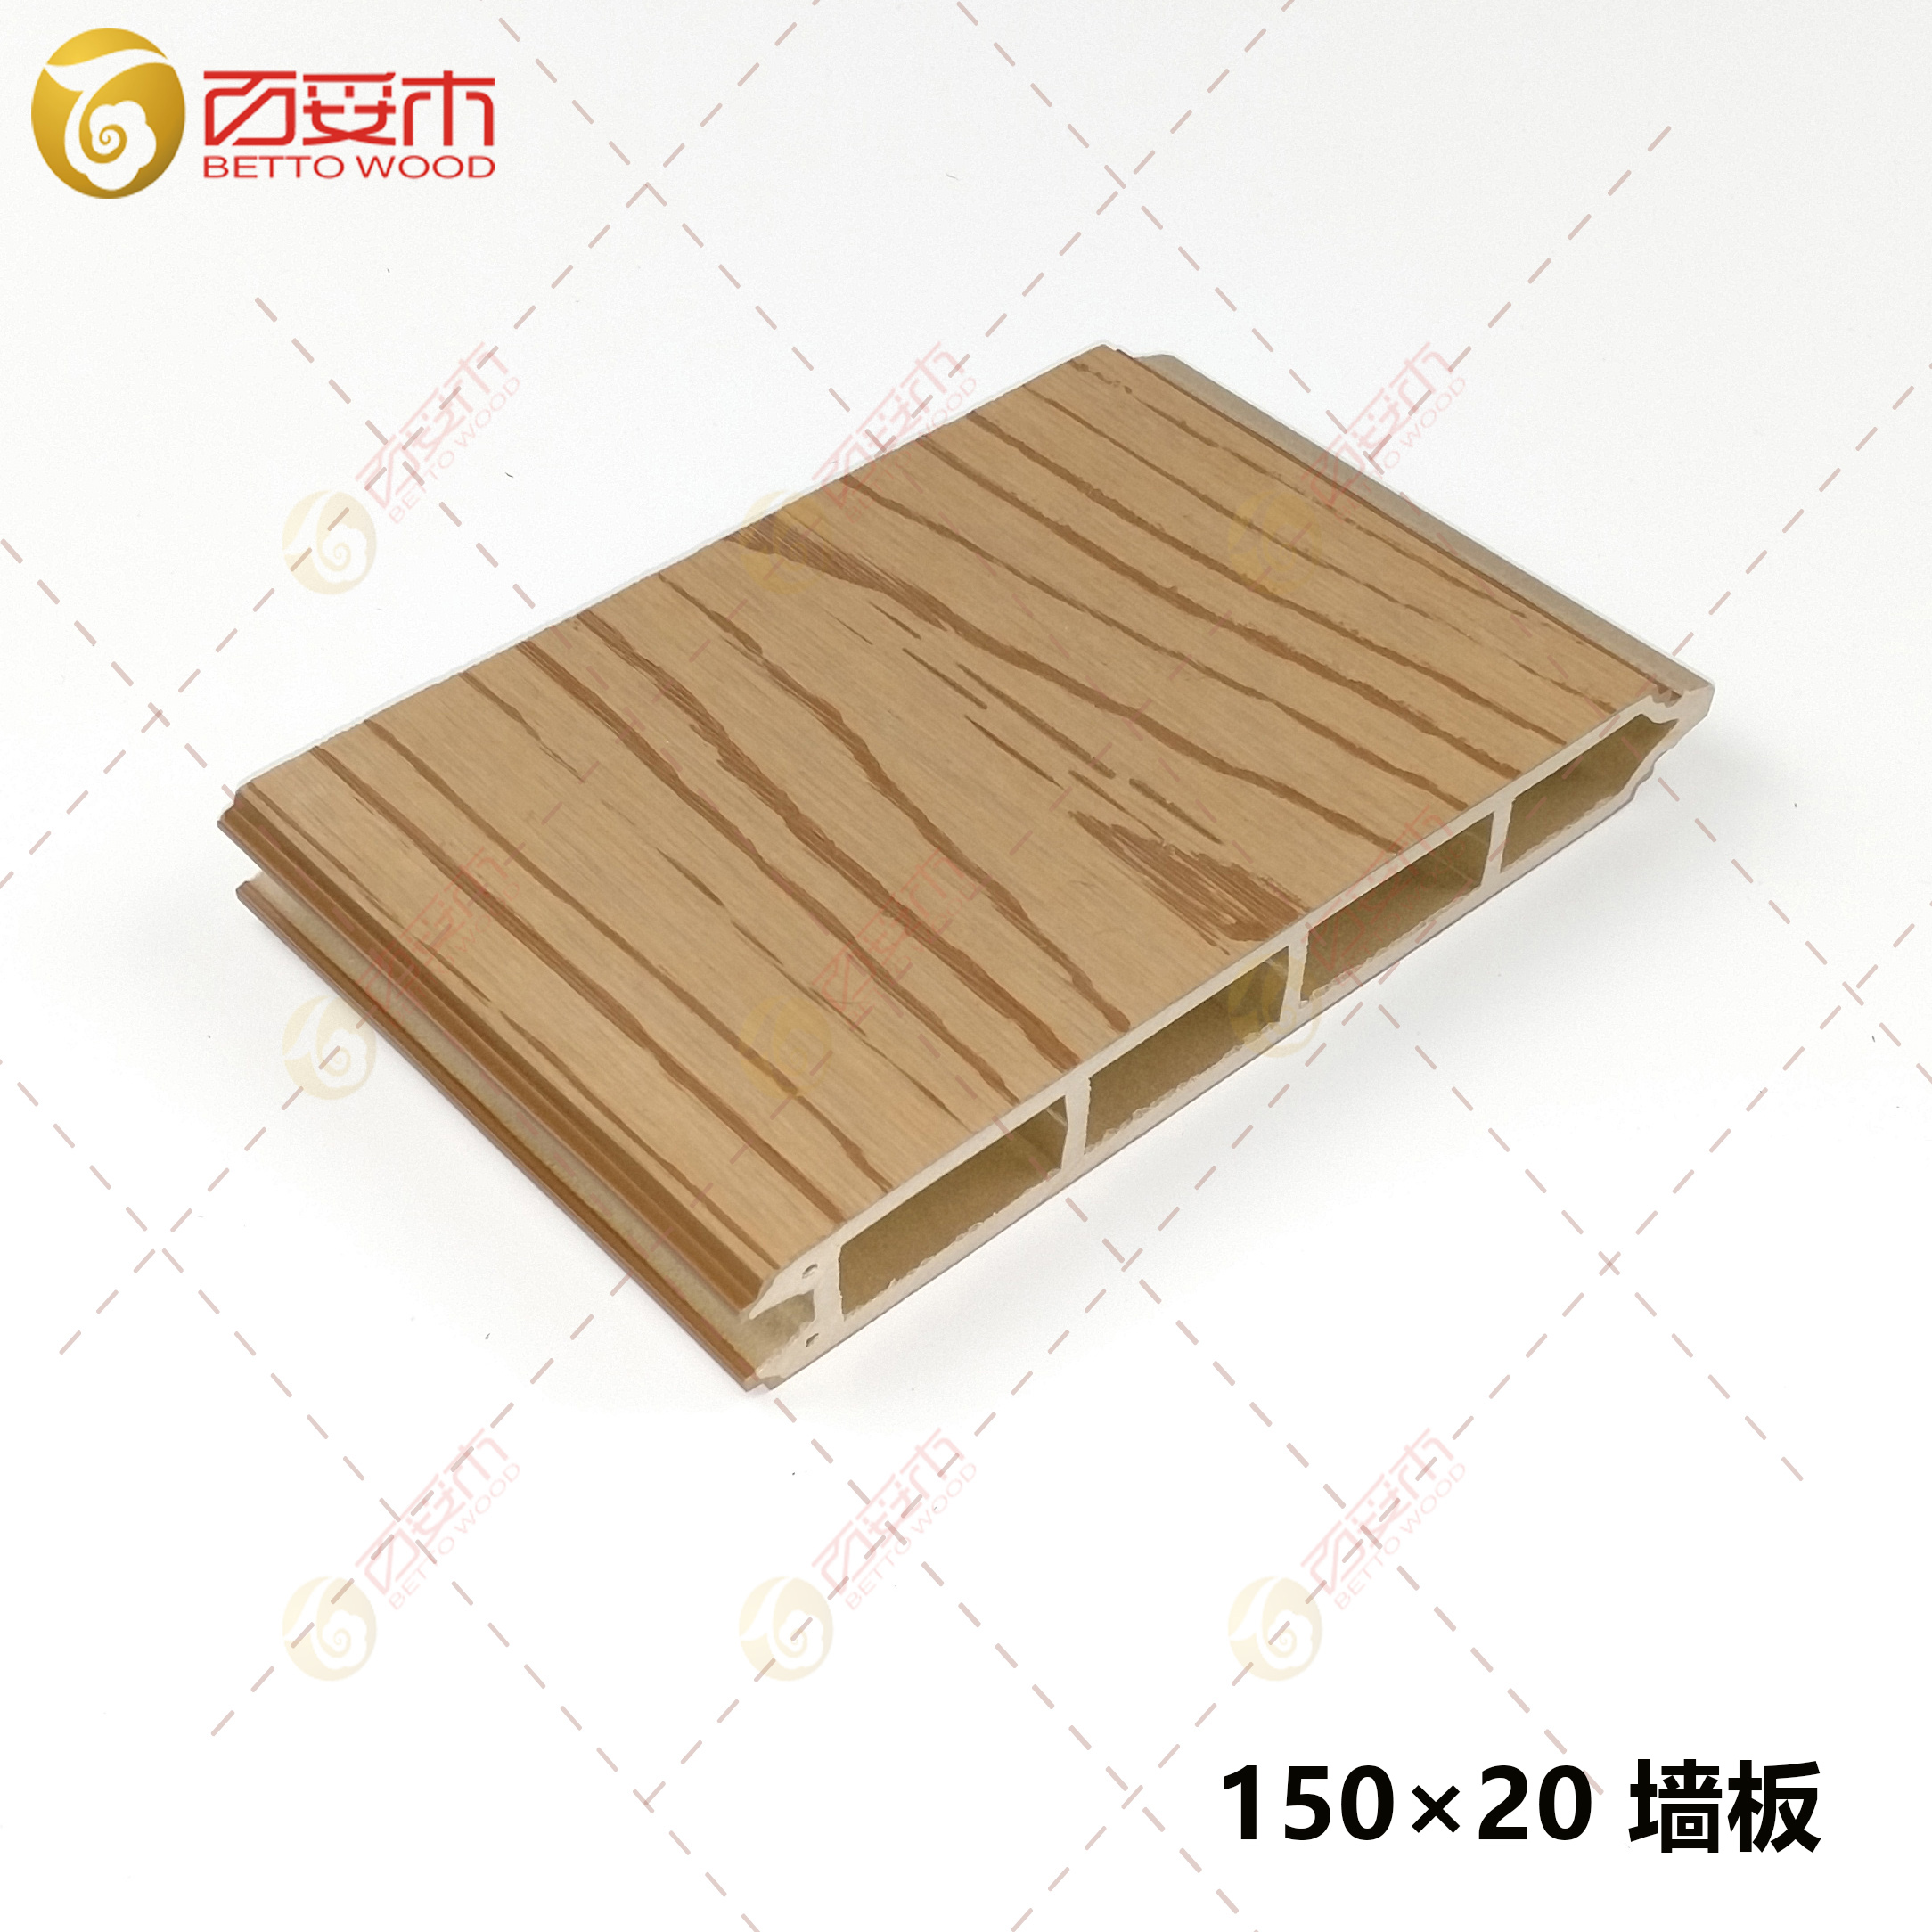 150-2塑木双面外墙板2